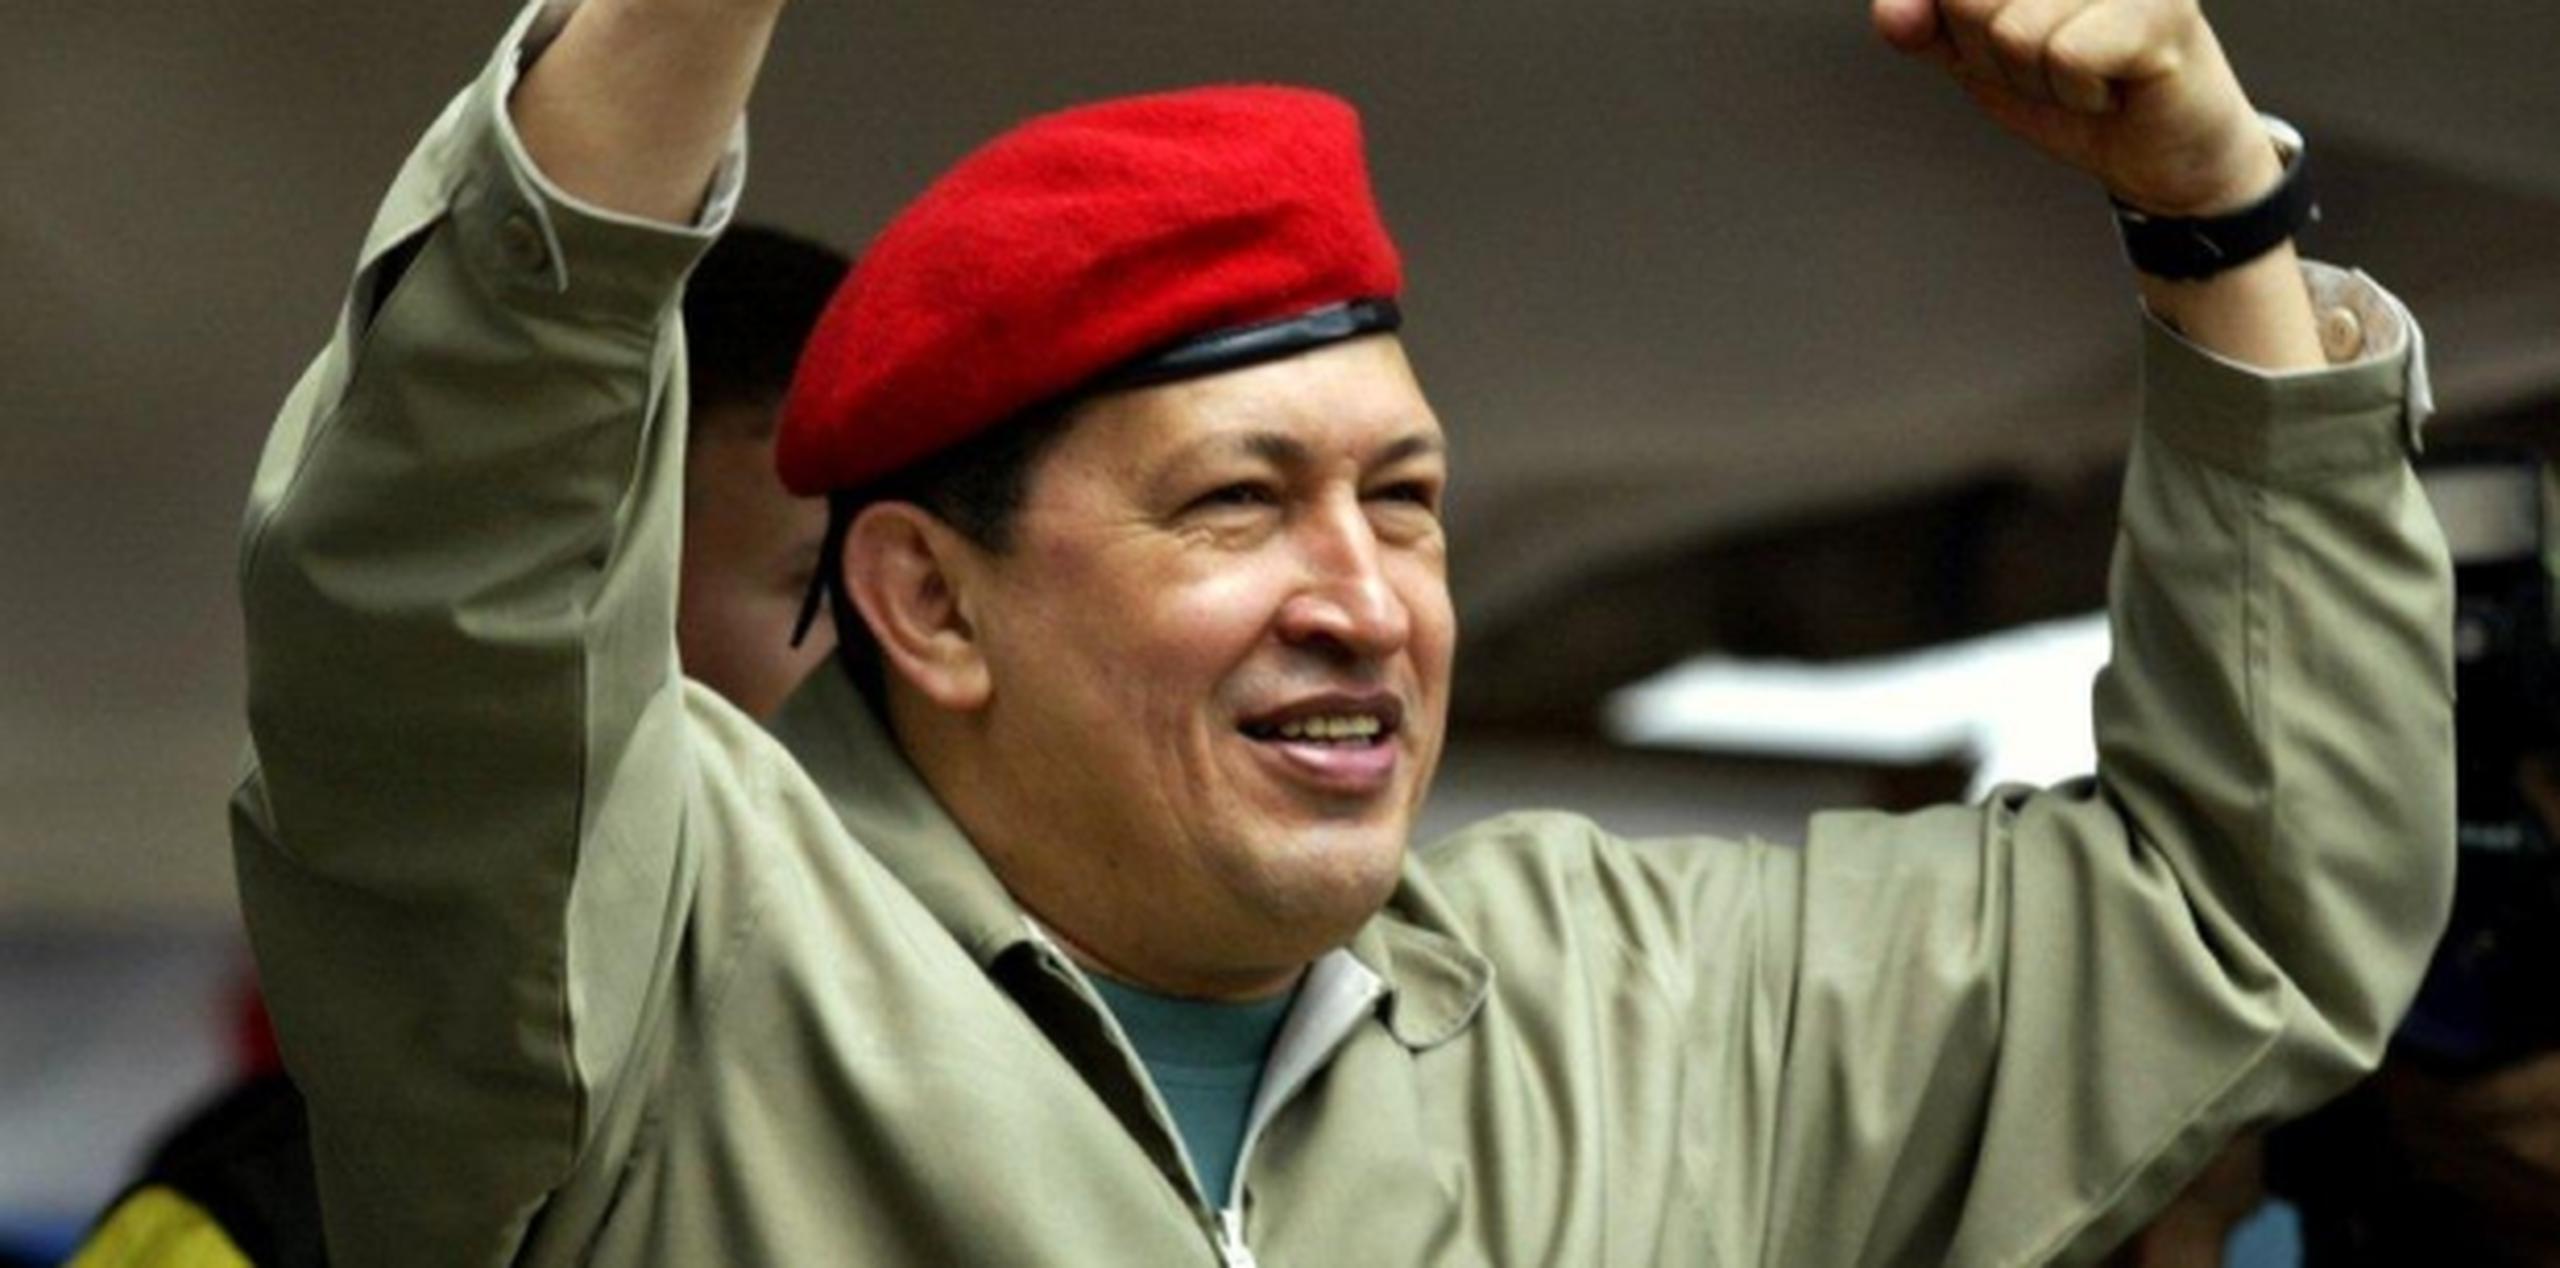 El presidente Chávez "contribuyó a desmontar el mito" de que "los medios son para informar. Esa es una media verdad que esconde el gran problema de la lucha de clases y la propiedad de los medios de comunicación en el capitalismo", indicó Rubio. (Archivo)